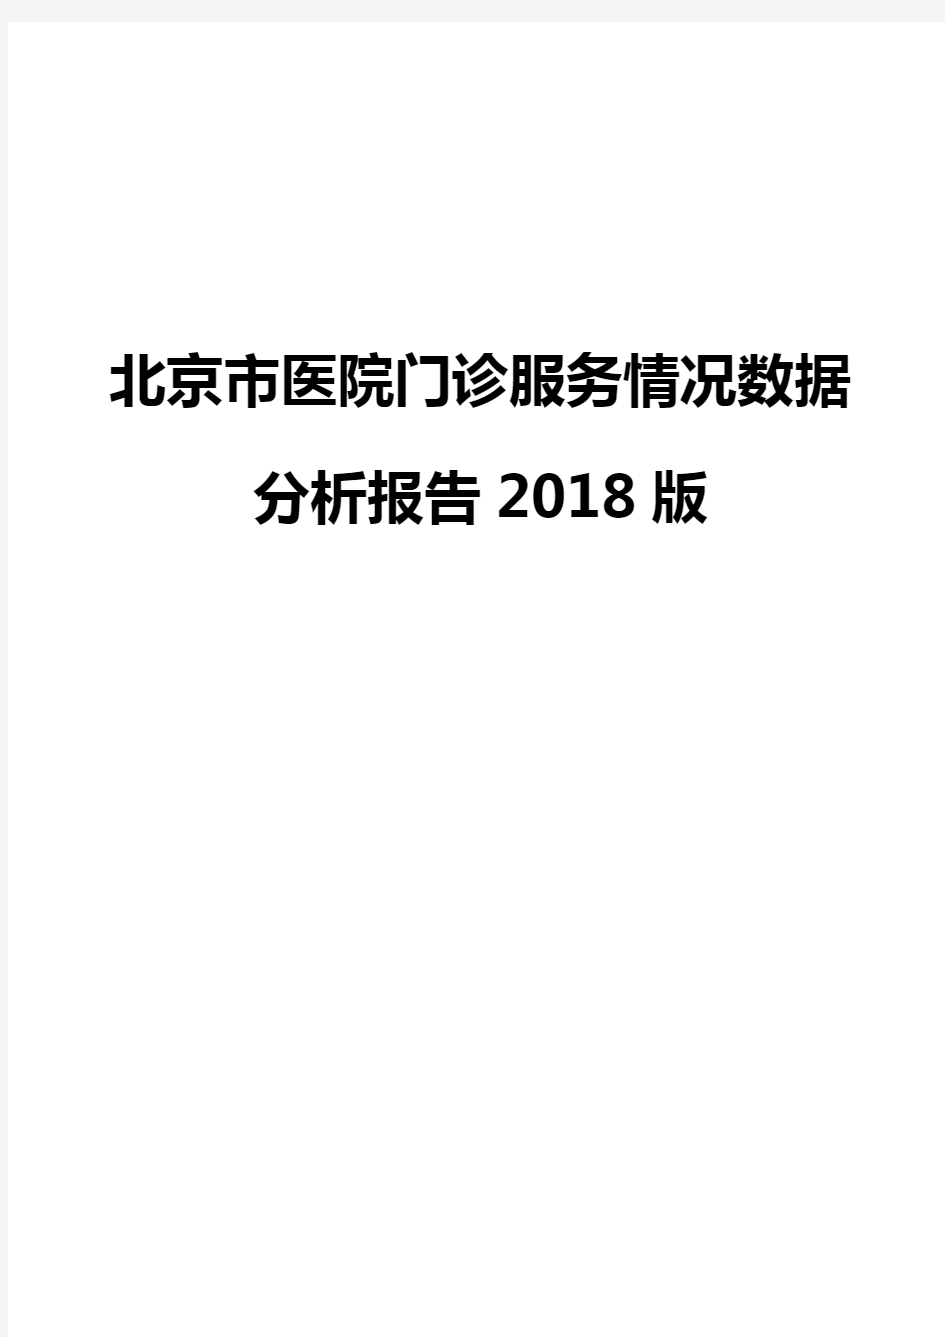 北京市医院门诊服务情况数据分析报告2018版